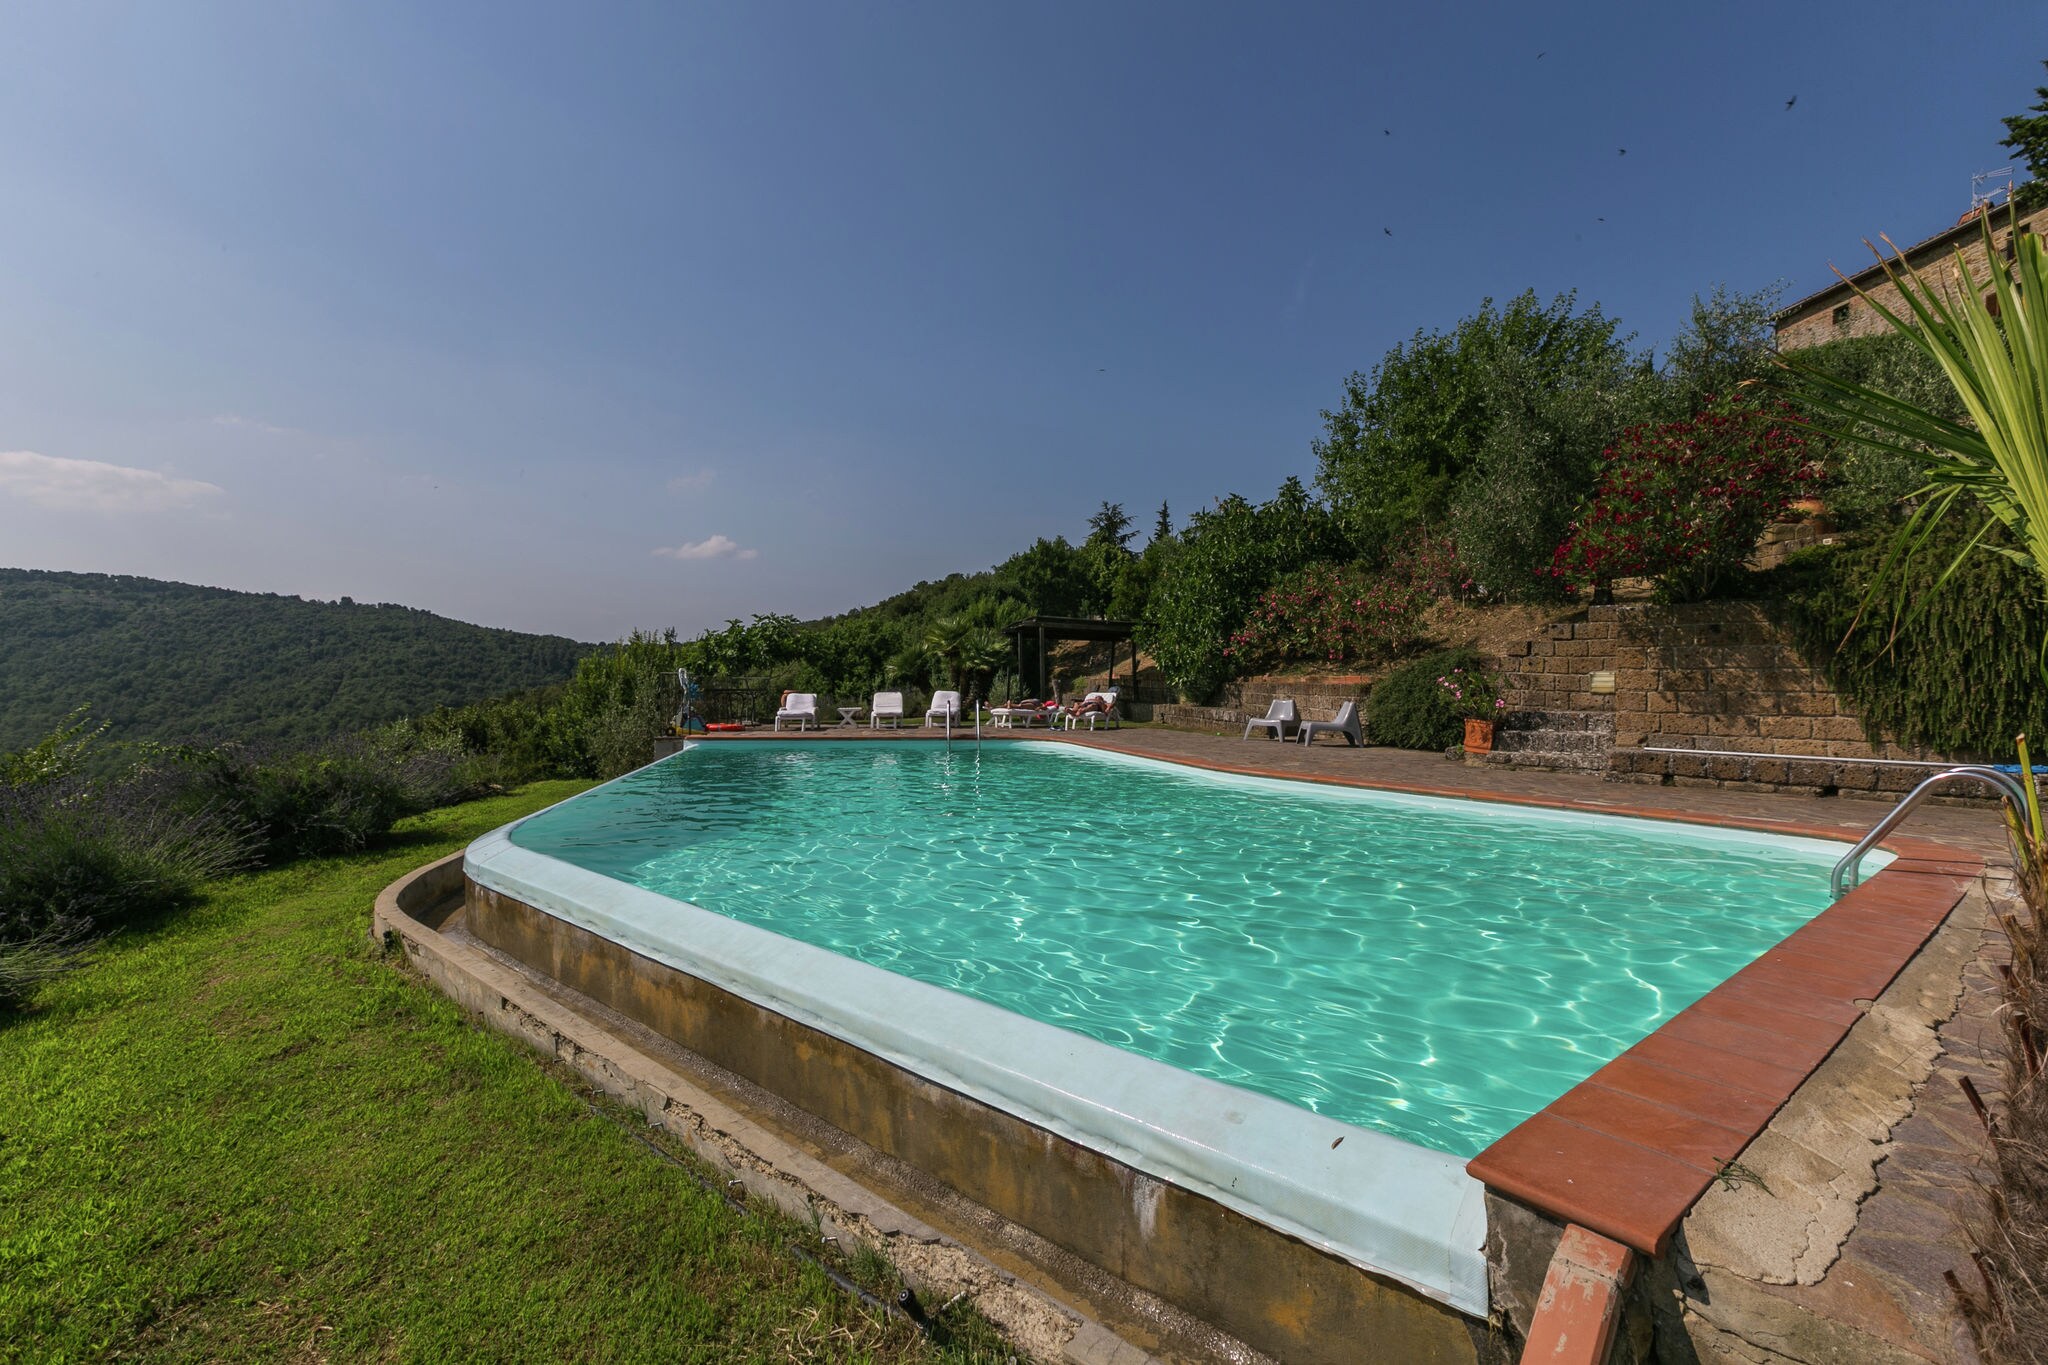 Vakantiehuis op authentieke borgo met fijn terras en zwembad